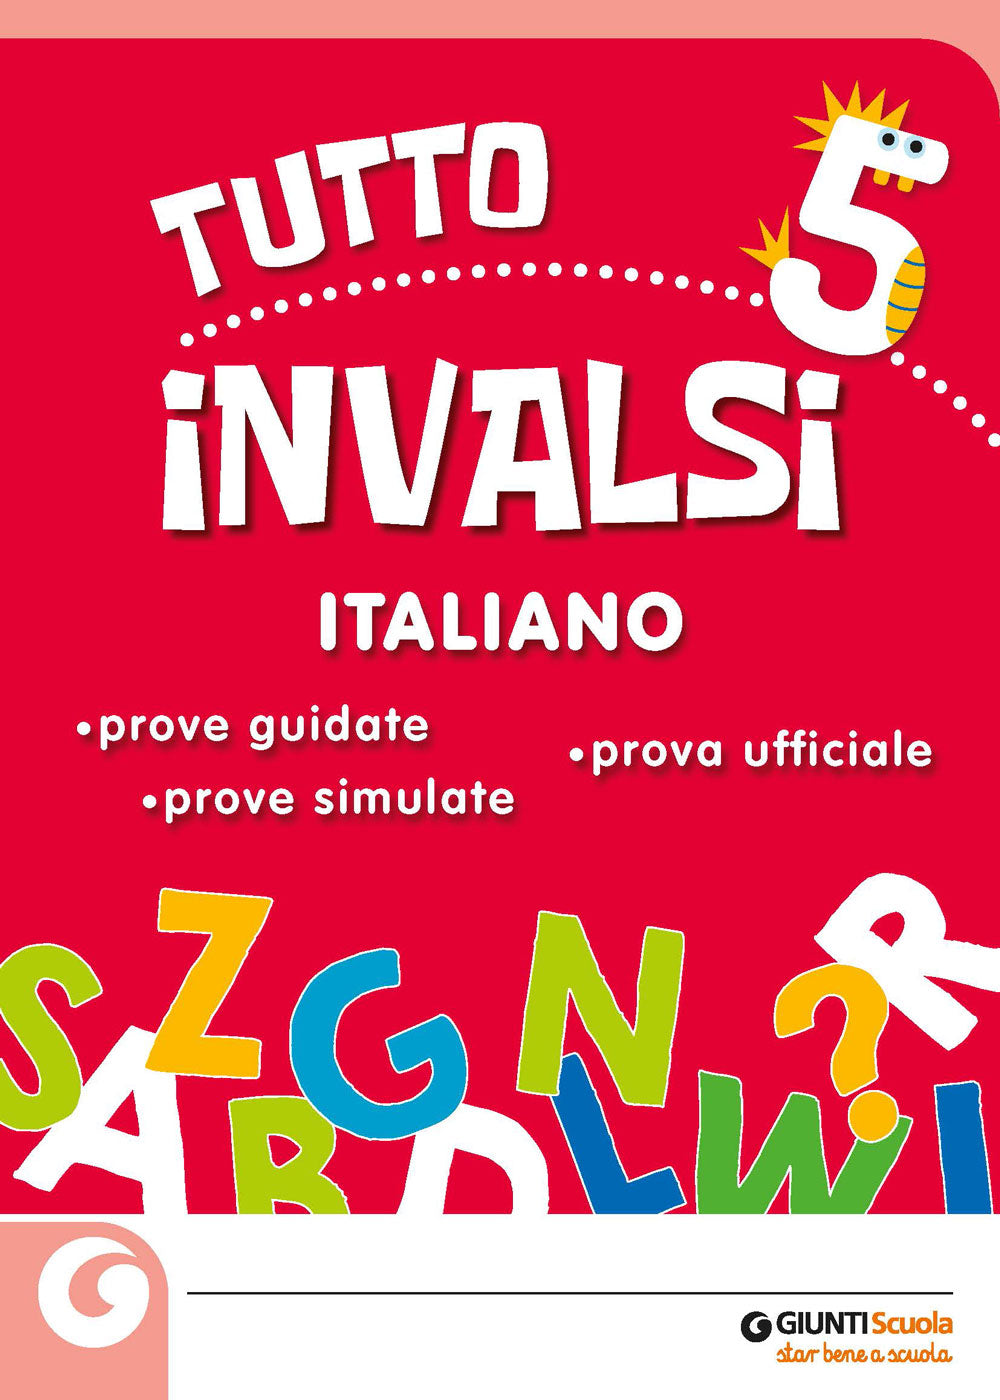 Tutto INVALSI - Italiano 5. Prove guidate - Prove simulate - Prova ufficiale